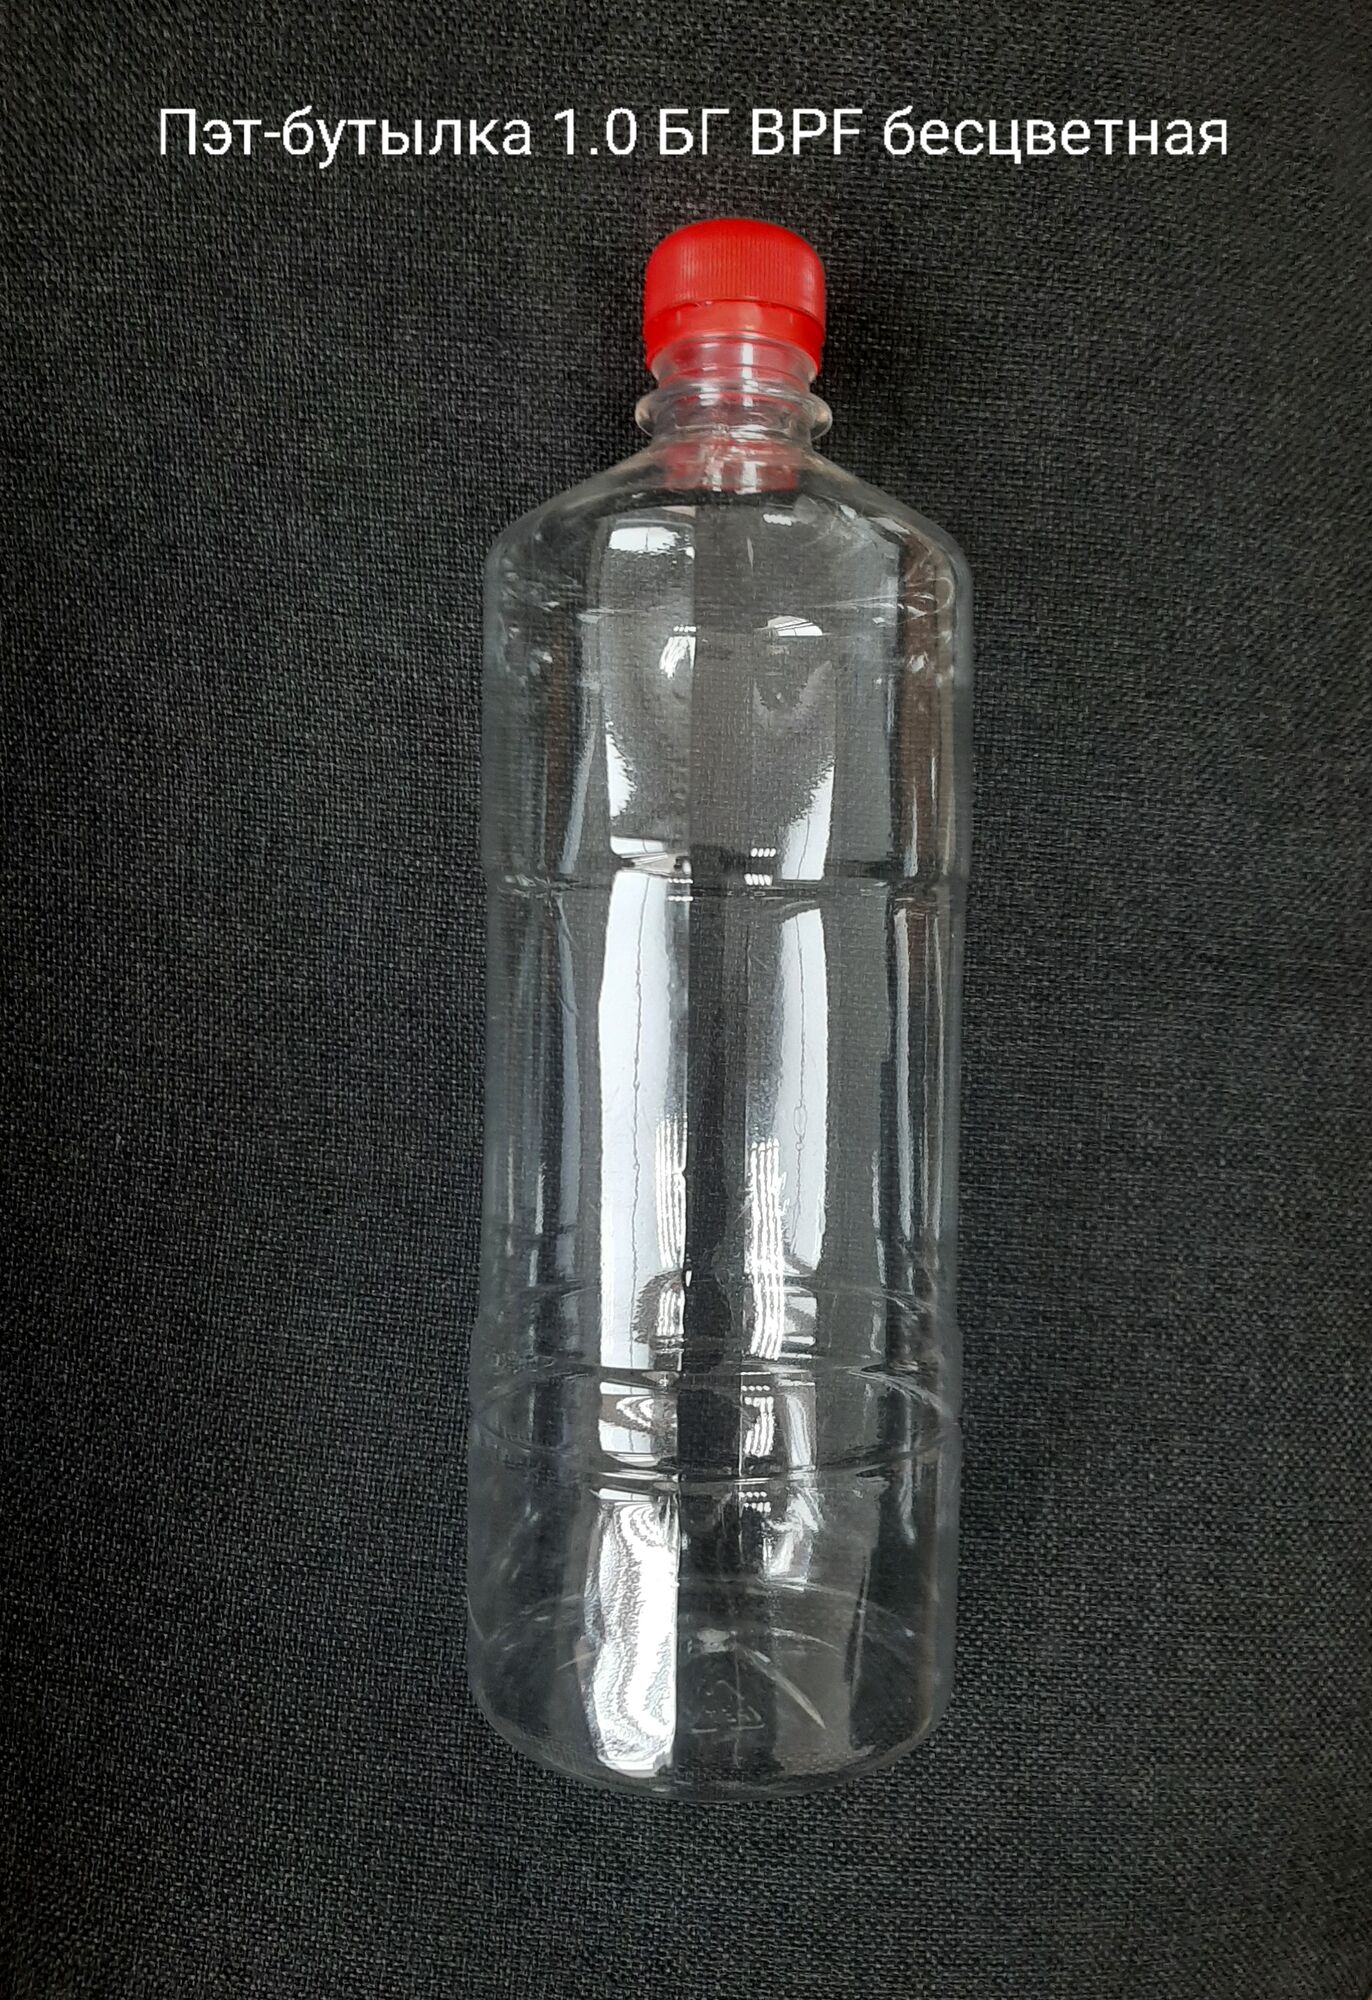 Пэт-бутылка 1,0БГ BPF, бесцветная (150 шт в упаковке) вес 29,5 гр